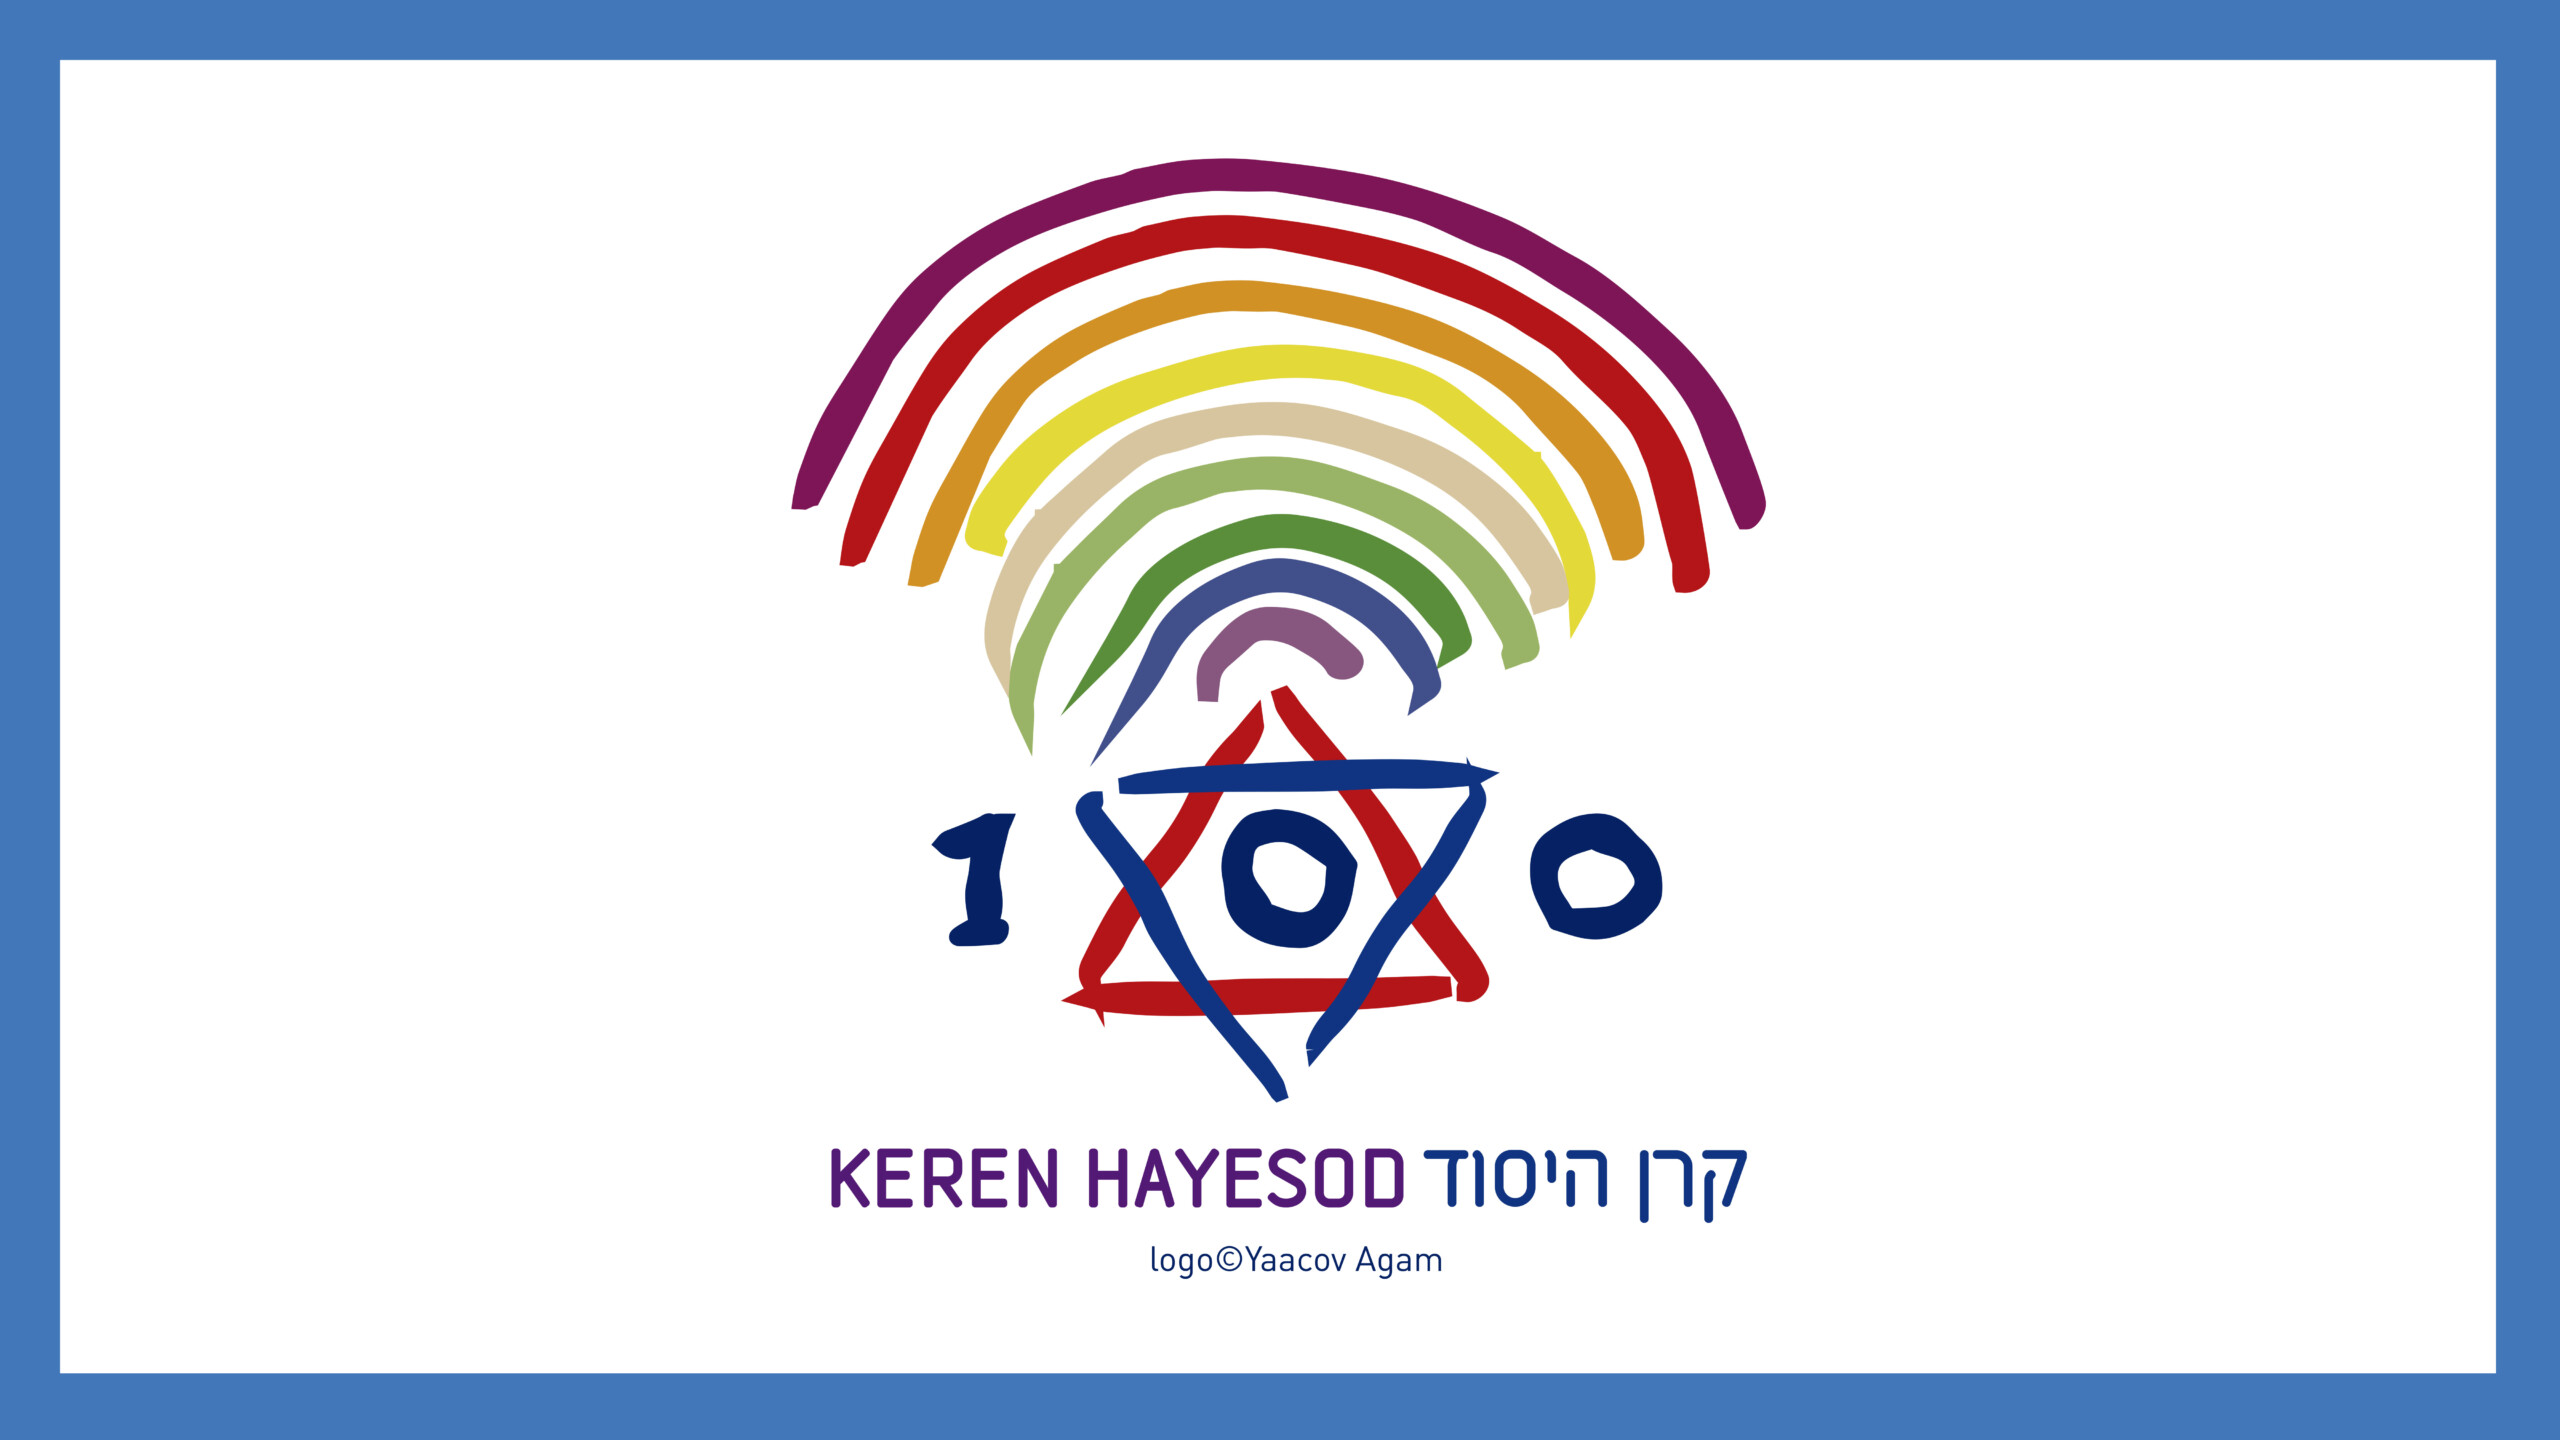  Celebrando juntos los 100 años de Keren Hayesod